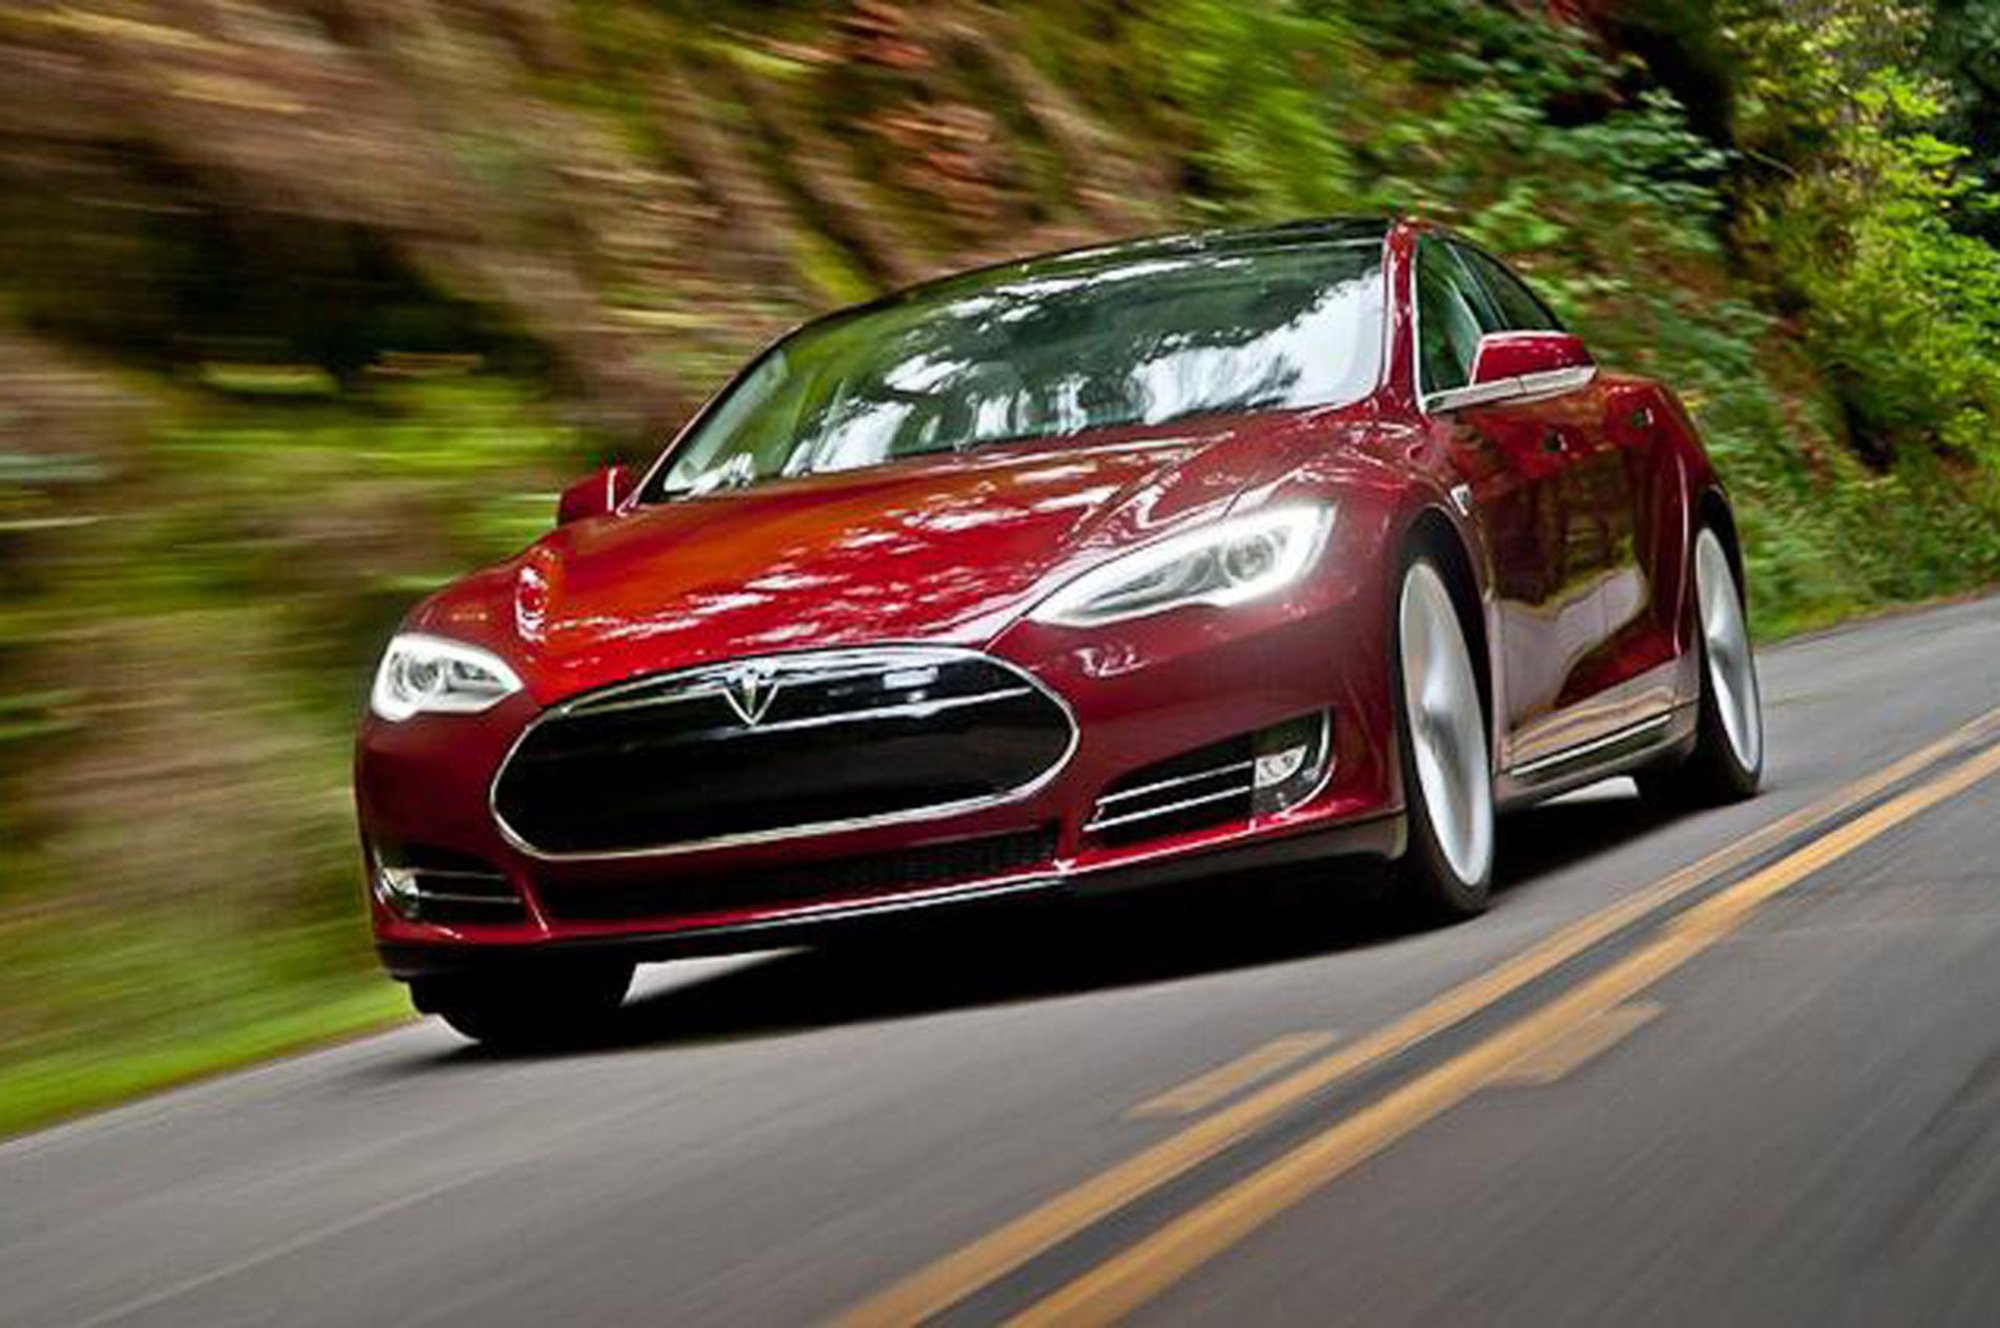 Tesla Model S, &egrave; record di autonomia con 728 km [VIDEO]